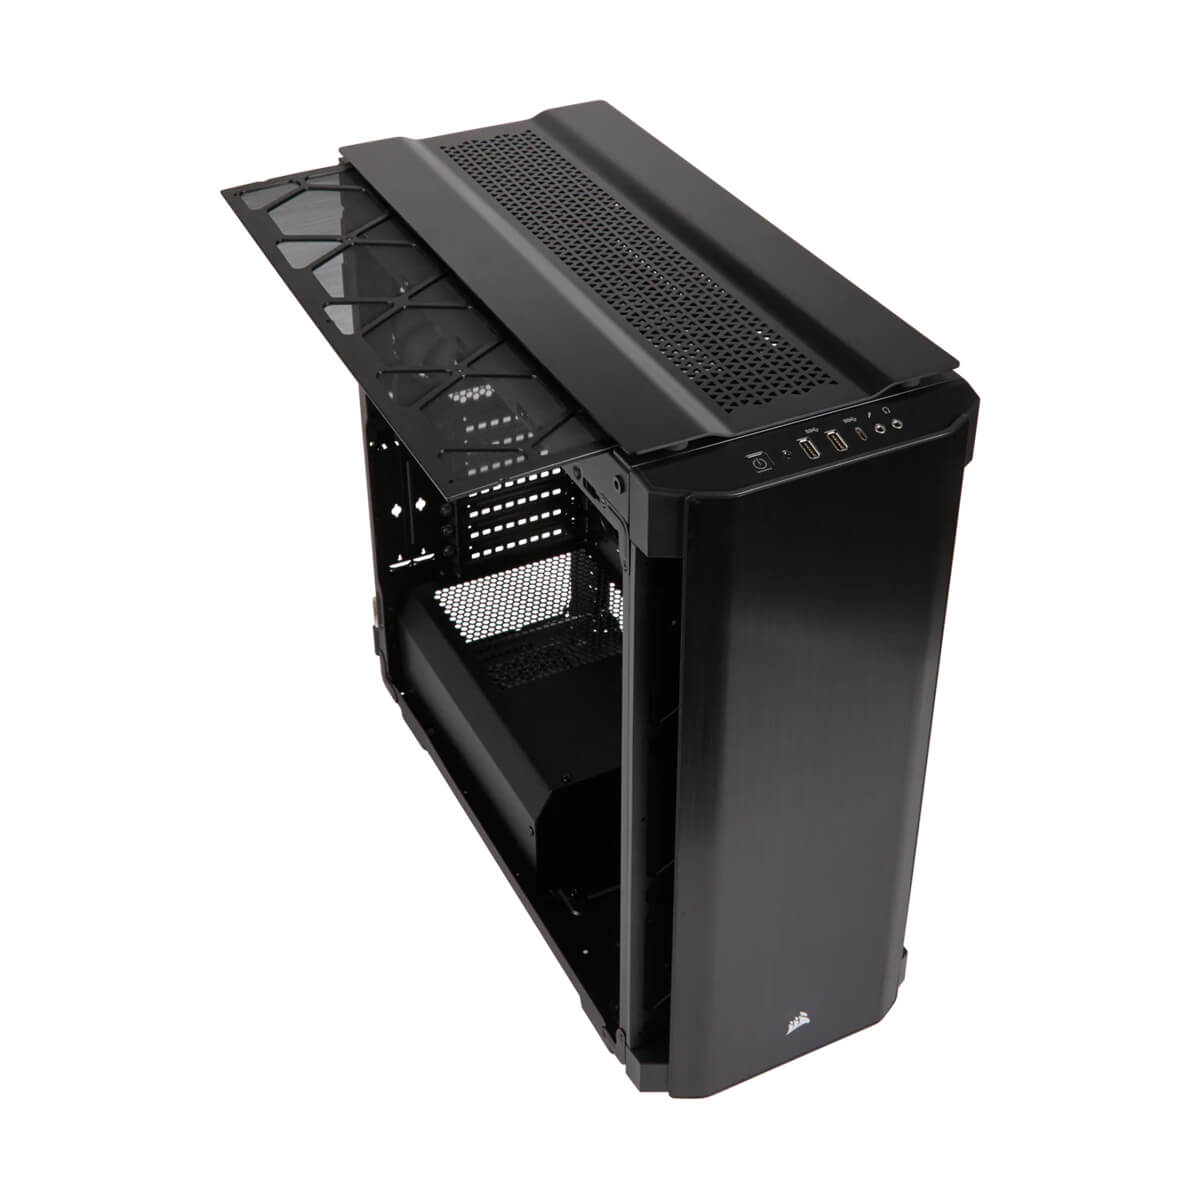 GABINETE CORSAIR OBSIDIAN 500D BLACK ATX USB 3.0 S/FTE CC-9011116-WW - CORSAIR